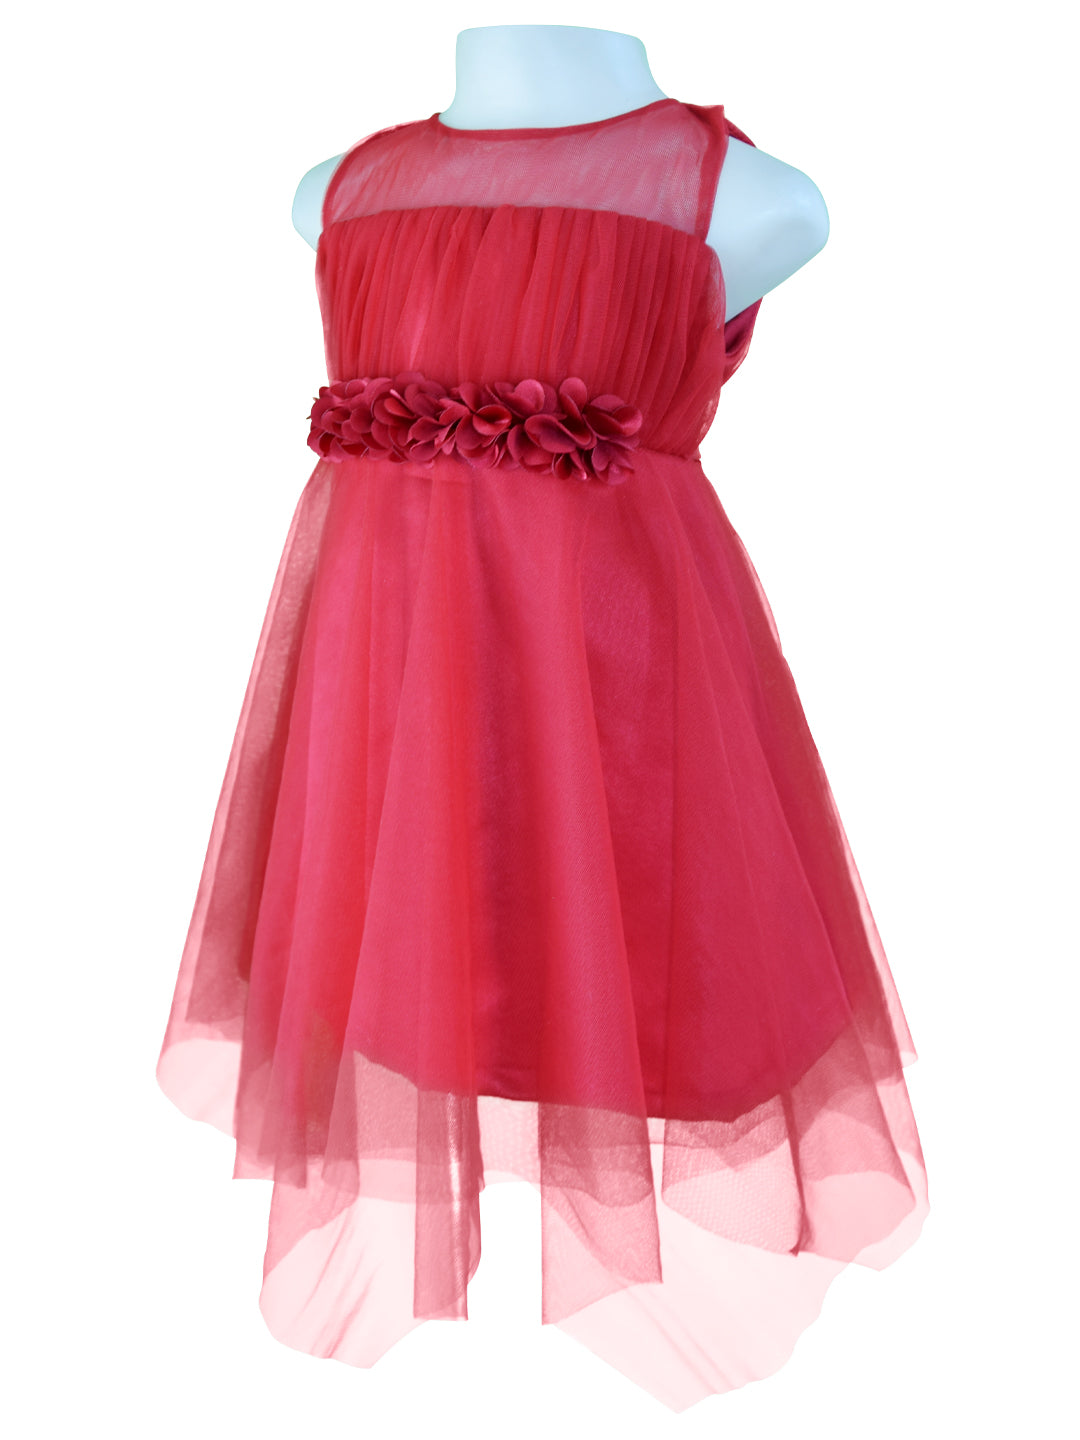 Dress for Girls_Faye Maroon Hankerchief Dress